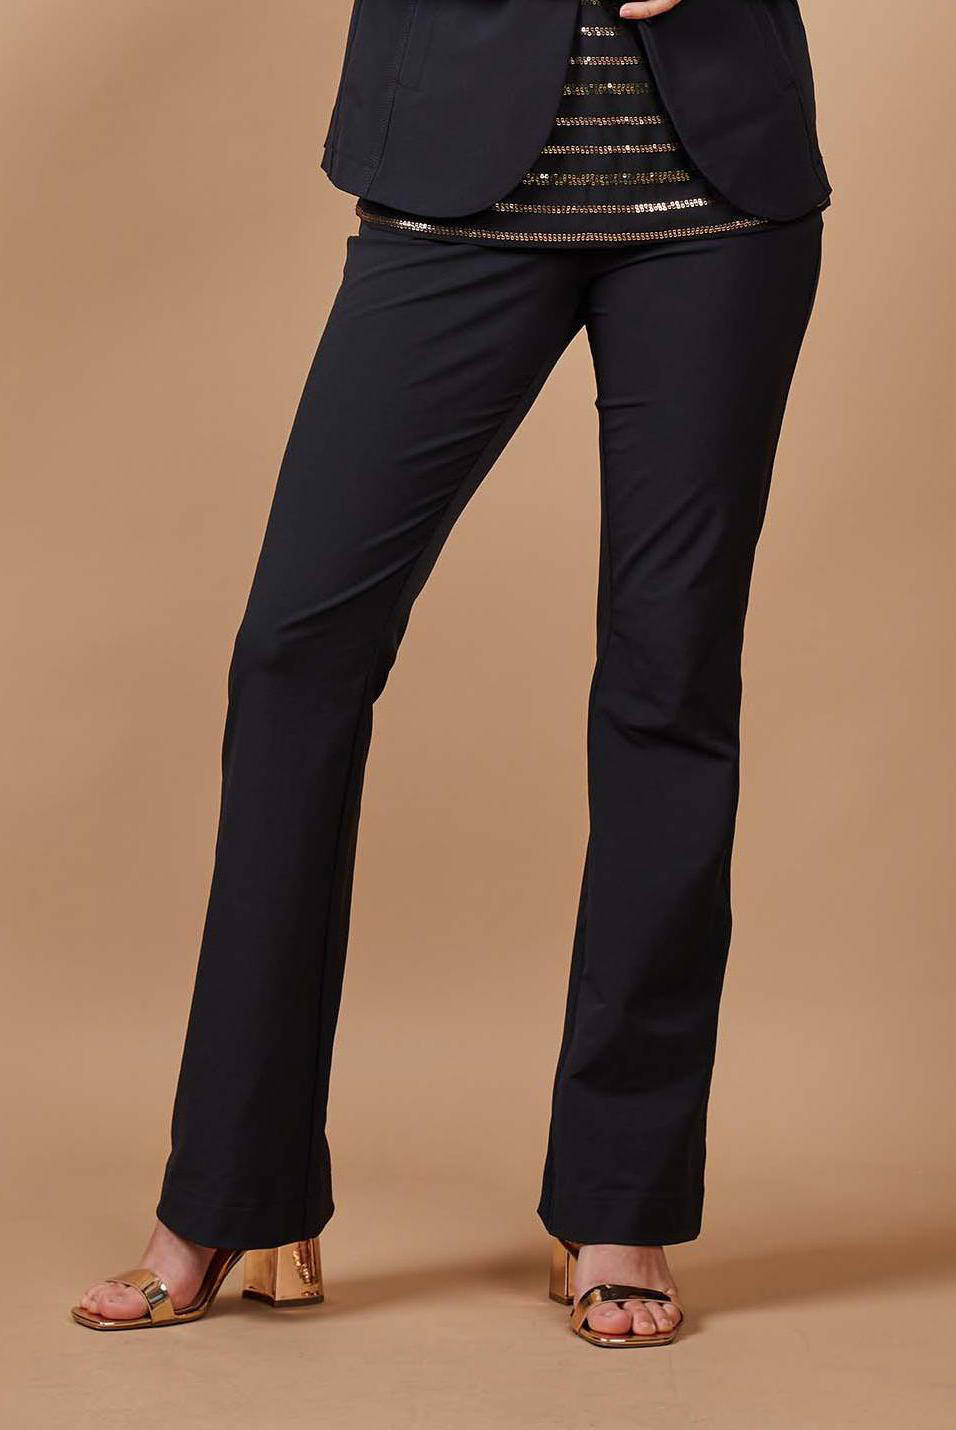 Toni Stoffen broek zwart zakelijke stijl Mode Broeken Stoffen broeken 